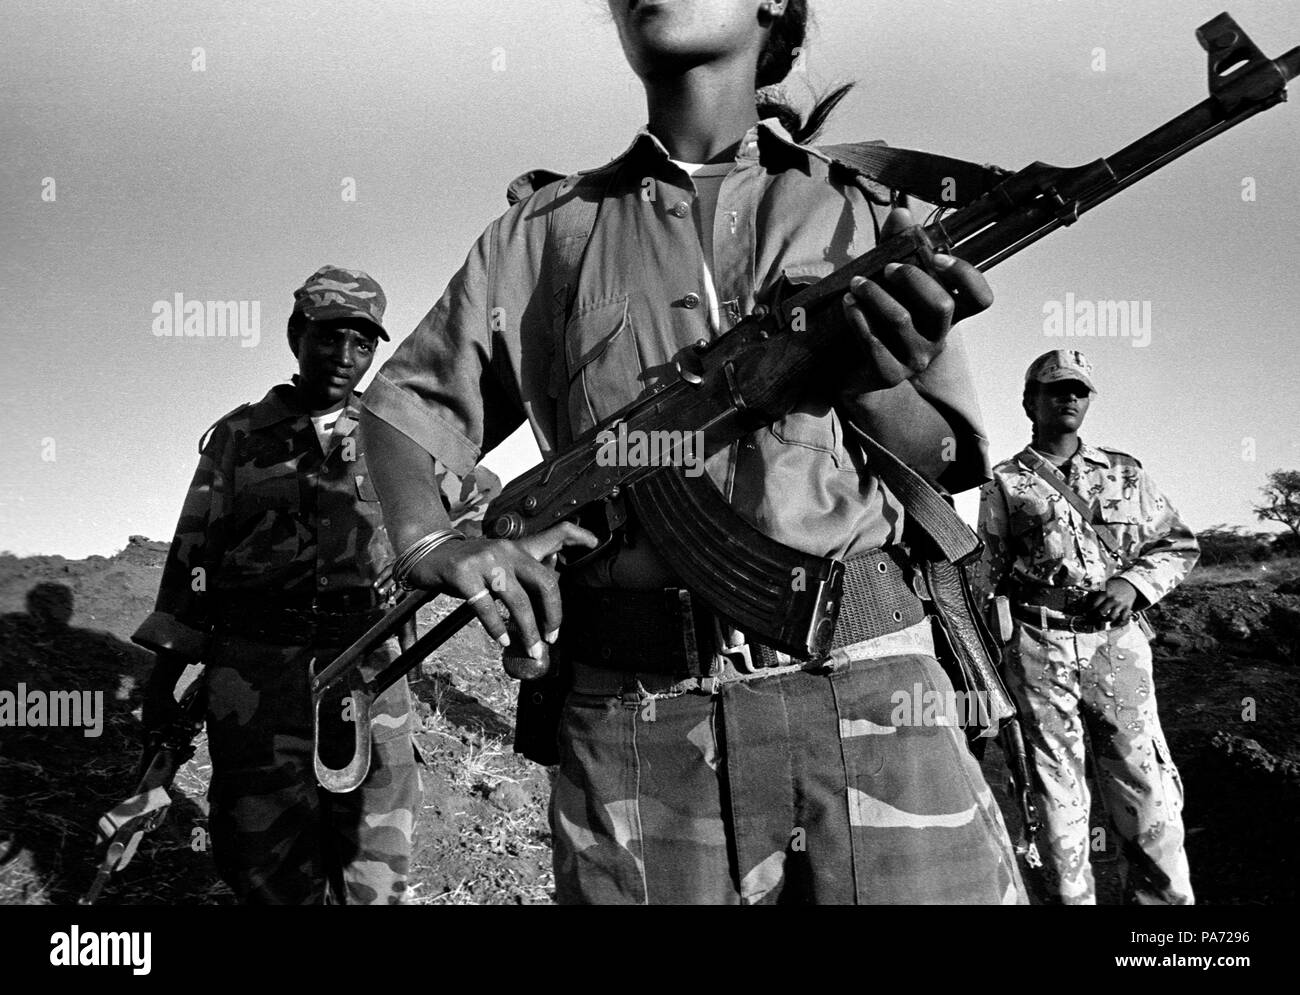 Datei. 19. Juli 2018. Eritrea zurück Truppen aus seiner schwer militarisierten Grenze zu Äthiopien gezogen hat als "Geste der Versöhnung", der pro-Regierung eritreischen Presse Agentur sagte. Im Bild: November 2, 1999 - Tserona, Eritrea - GENET KAHSAI (C), ALGANESH TSEGEZEAB (L) und AYNOUM TESFAMICHAEL stehen an einem Graben in der Nähe der Grenze verteidigen Sie bei Egri Mikhal. Frauen umfassen ein Drittel der militärischen und neben den Männern kämpfen. Credit: Cheryl Limousine/ZUMAPRESS.com/Alamy leben Nachrichten Stockfoto